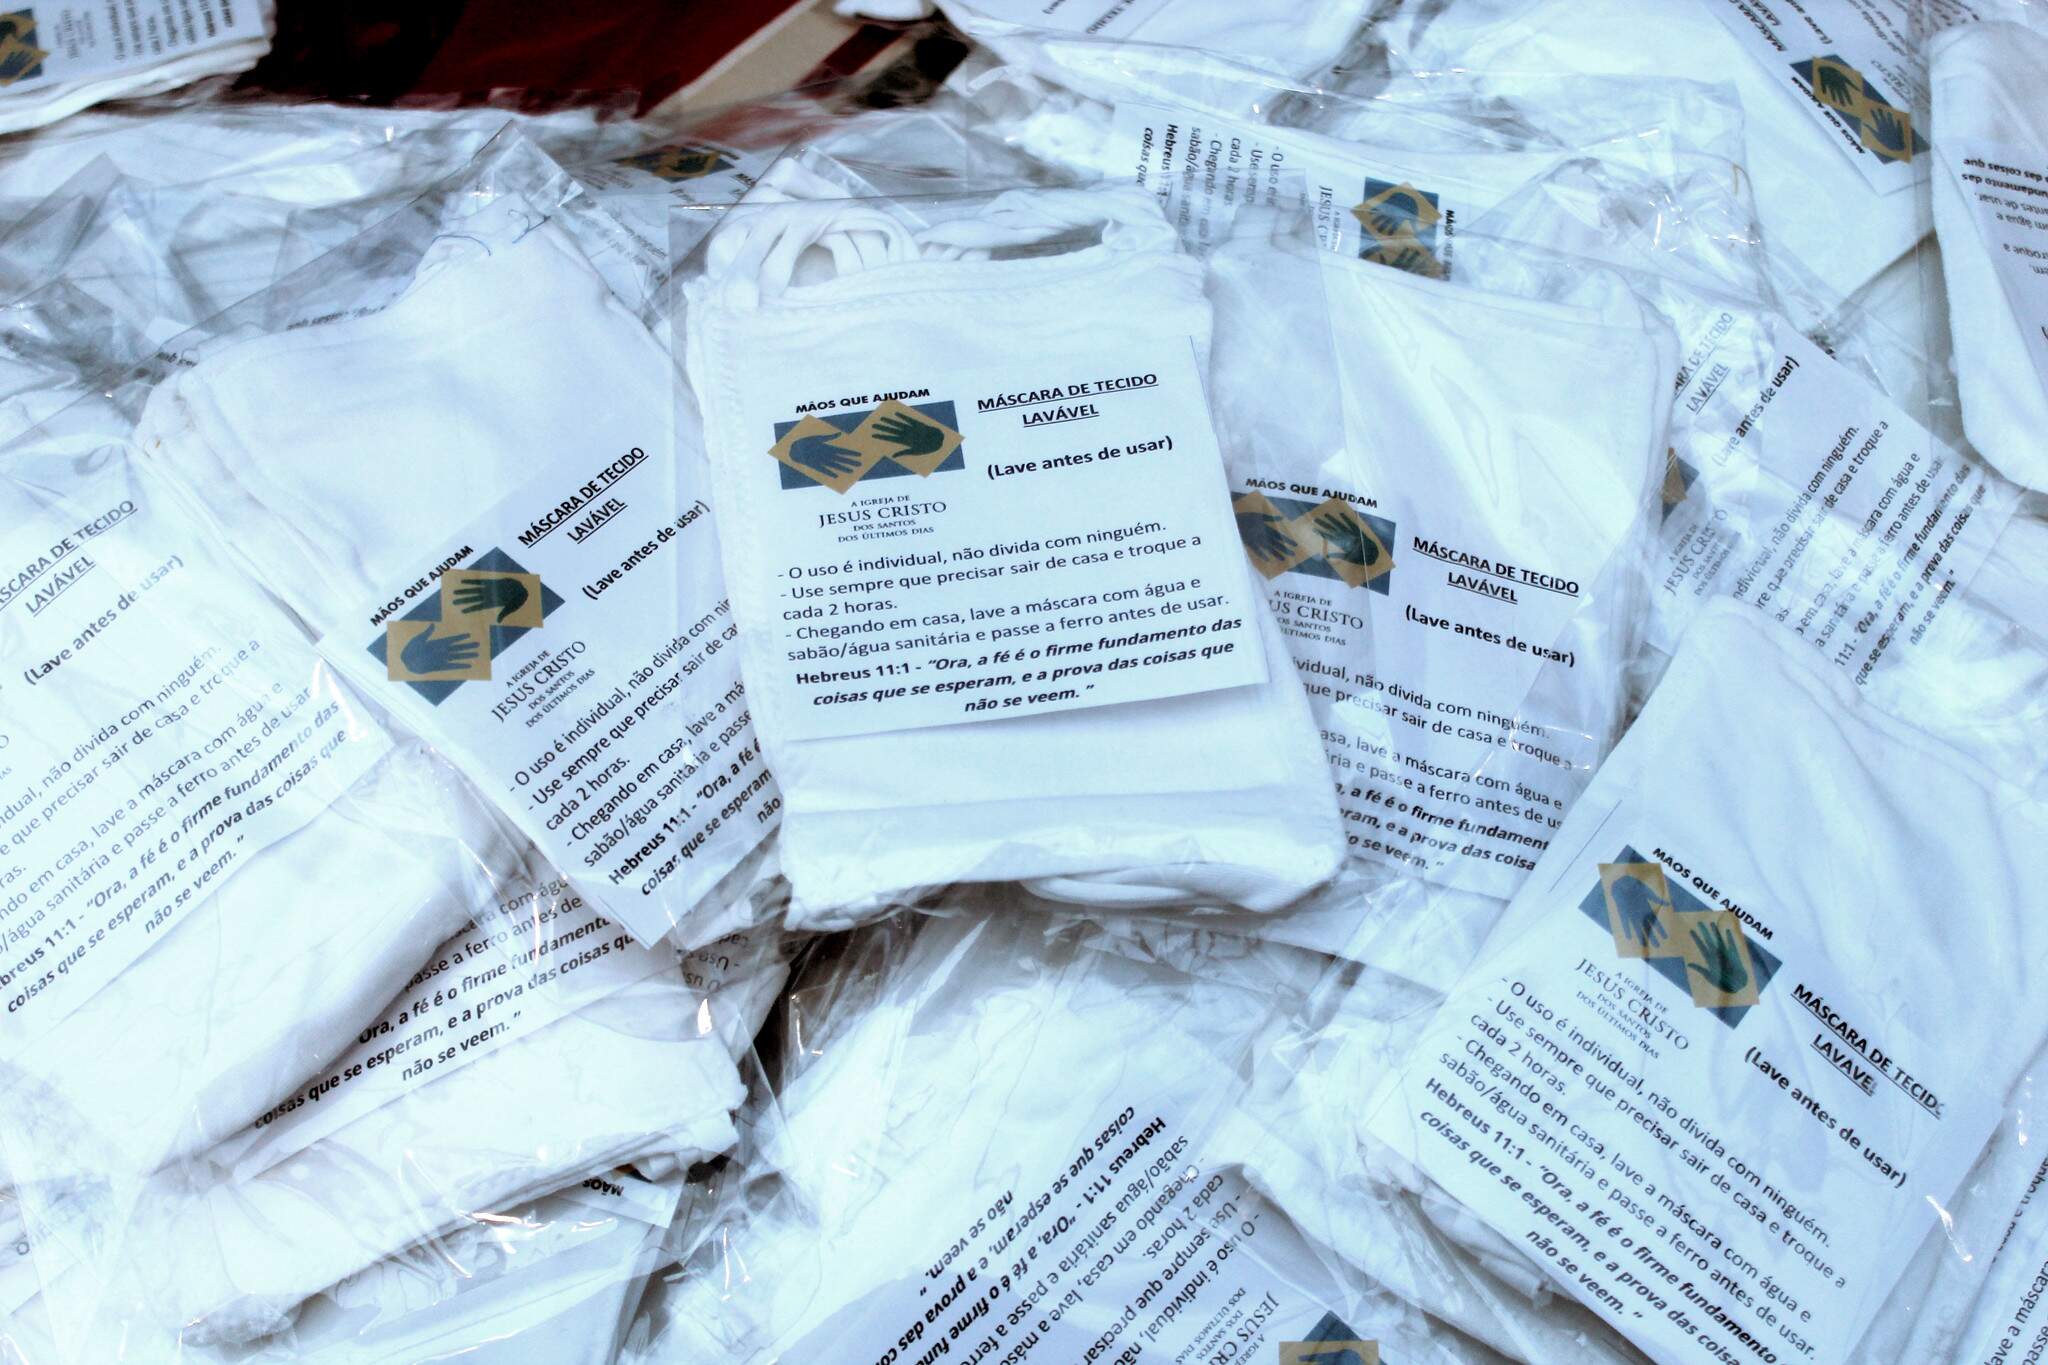 Voluntários de diversos segmentos religiosos de Guarujá confeccionaram 18 mil máscaras de proteção 